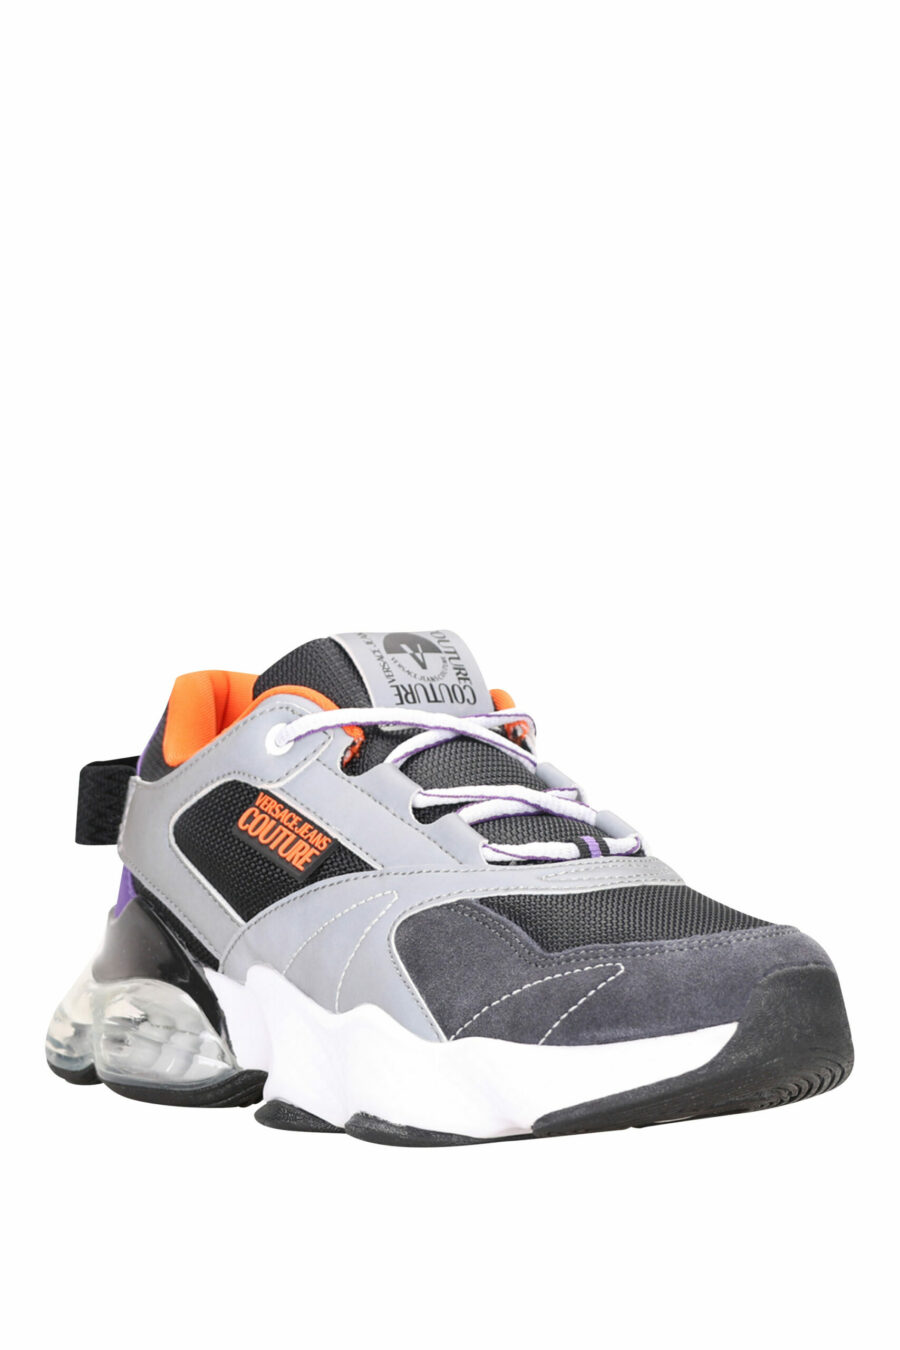 Schwarze Mix-Schuhe mit Schlauch und weißem Mini-Logo - 8052019485165 2 skaliert